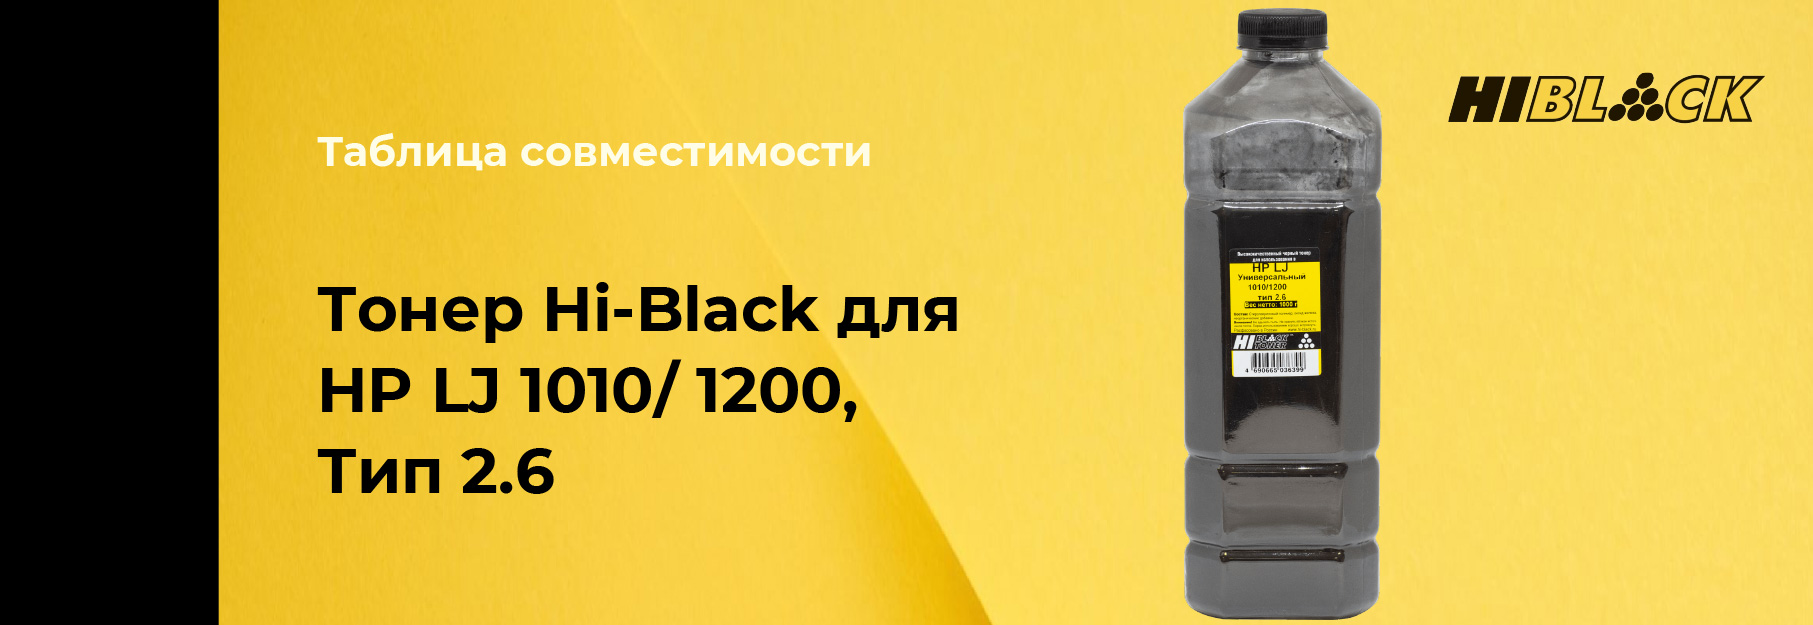 tablica-sovmestimosti-Hi-Black-HP-LJ-1010,-type2-6.jpg